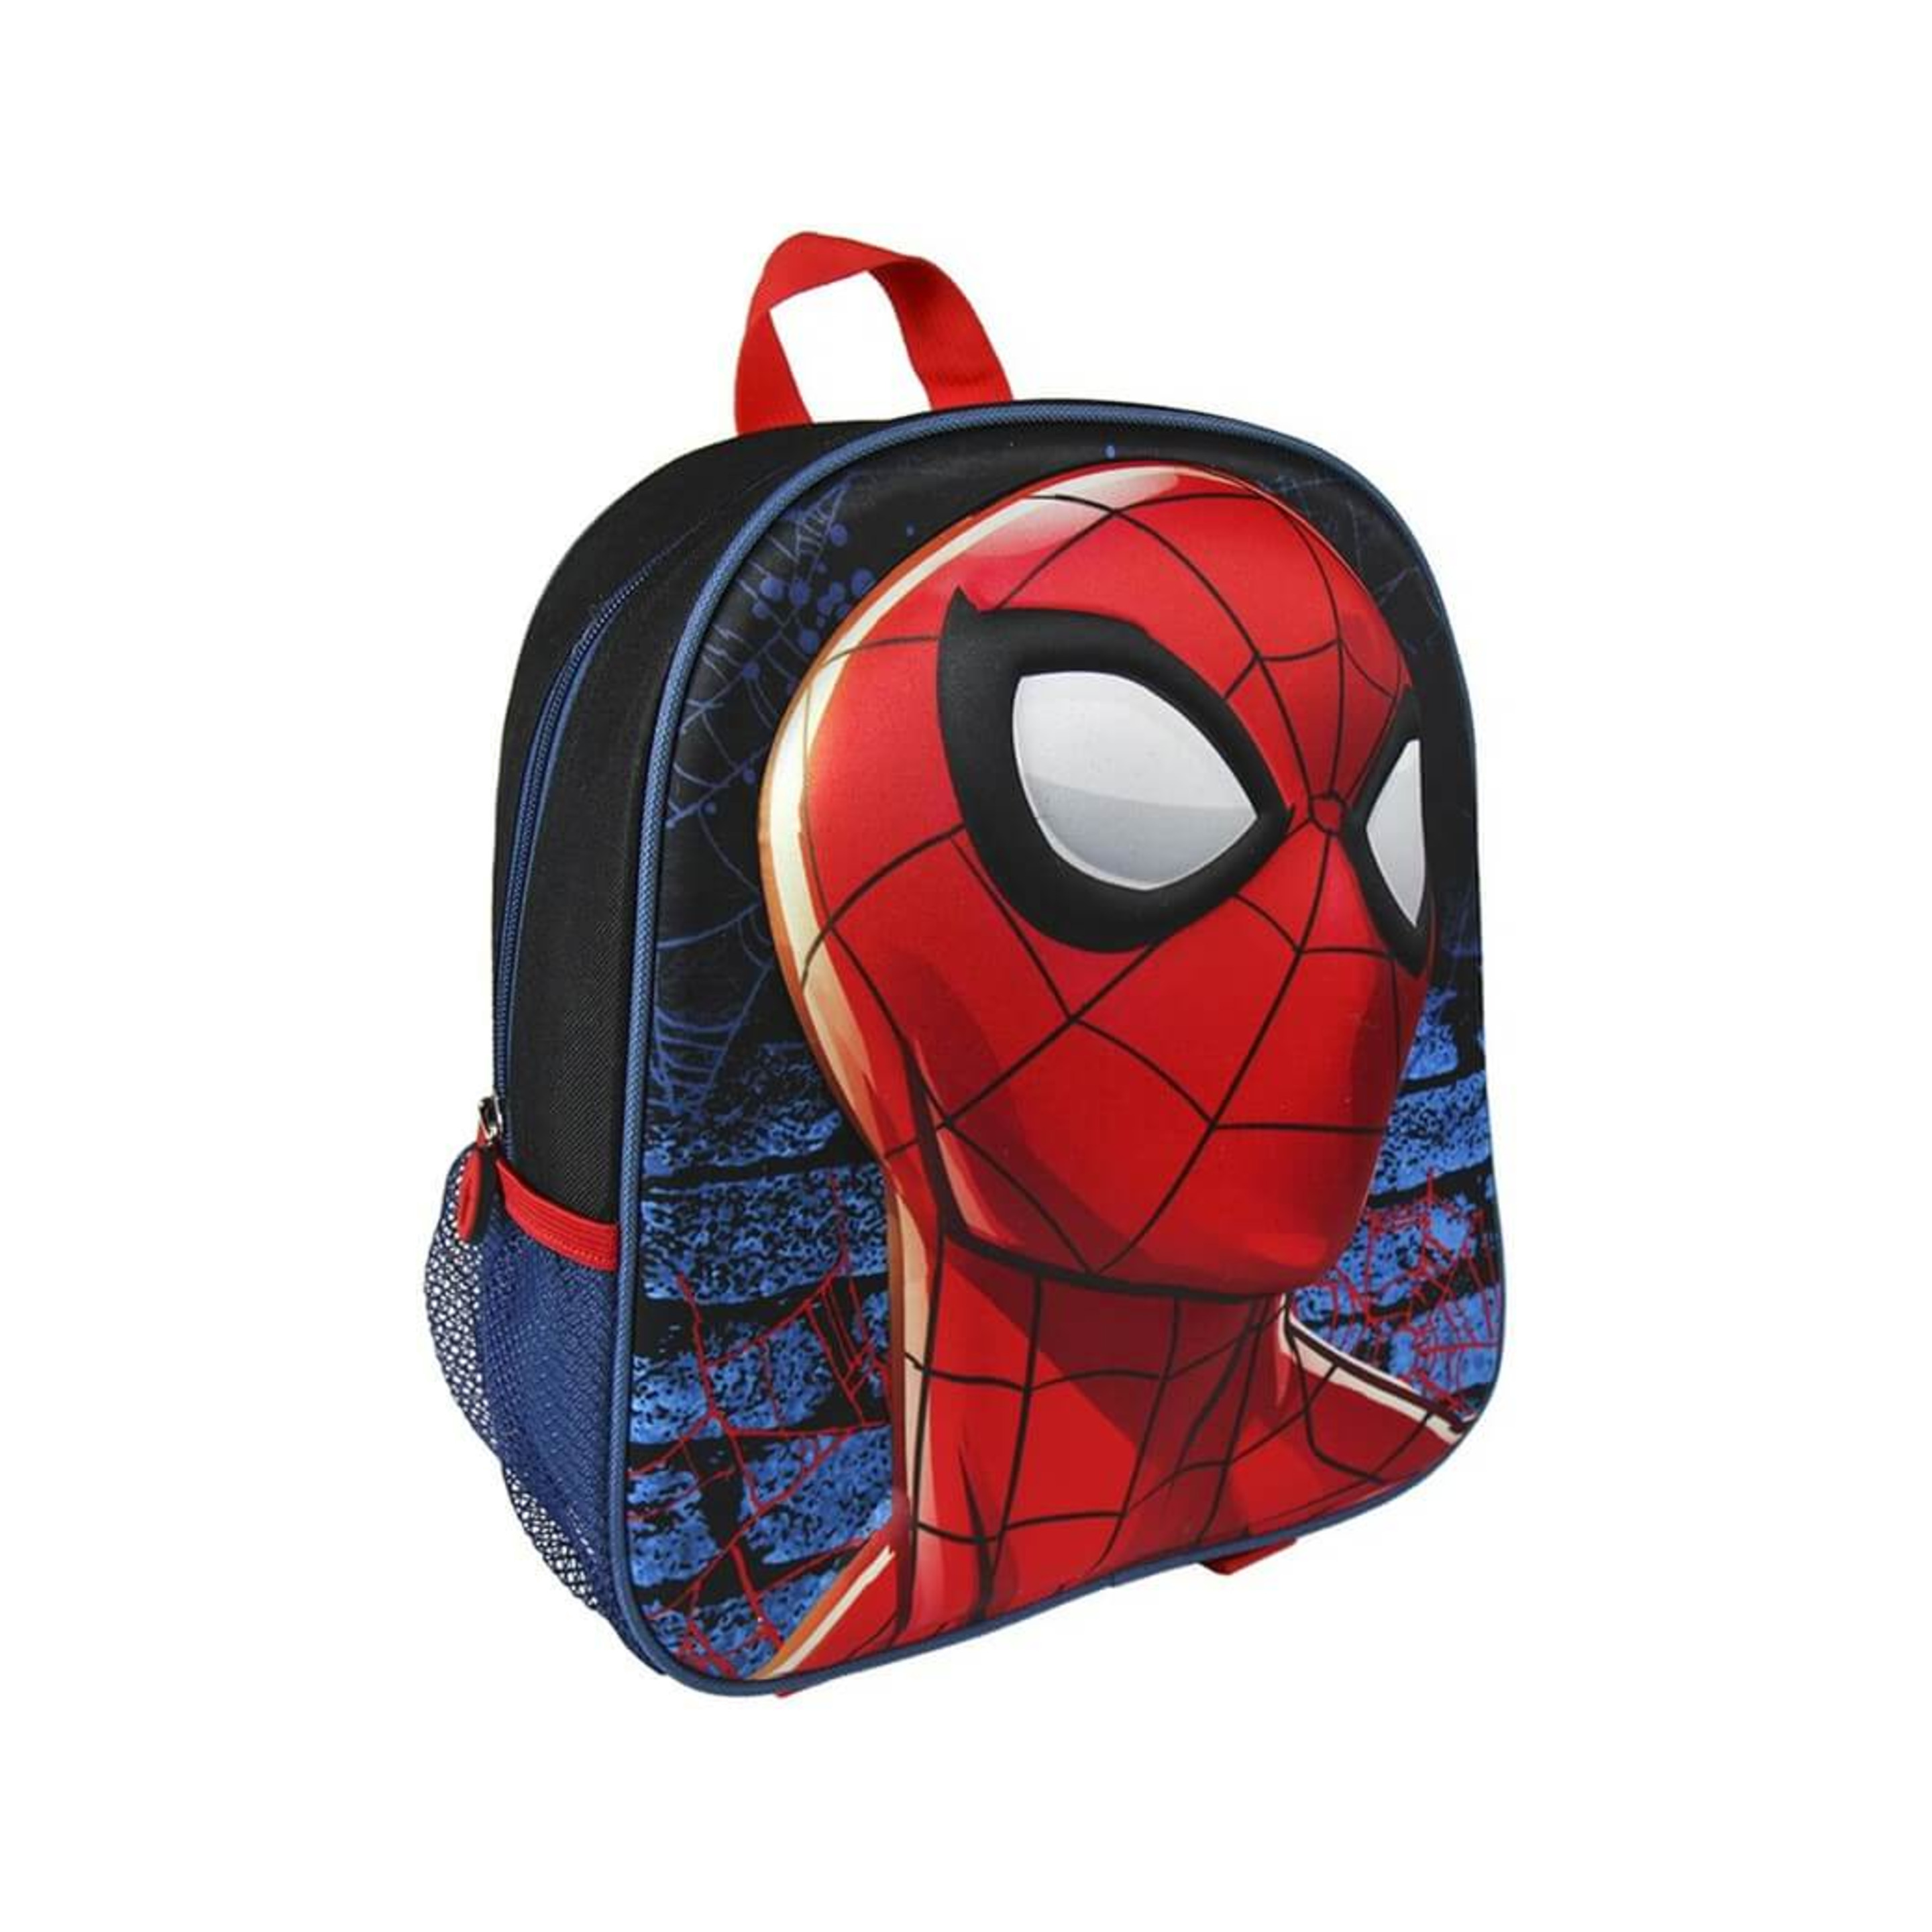 Mochila Infantil De Spiderman Con Relieve 25x31x10 Cm - Multicolor  MKP